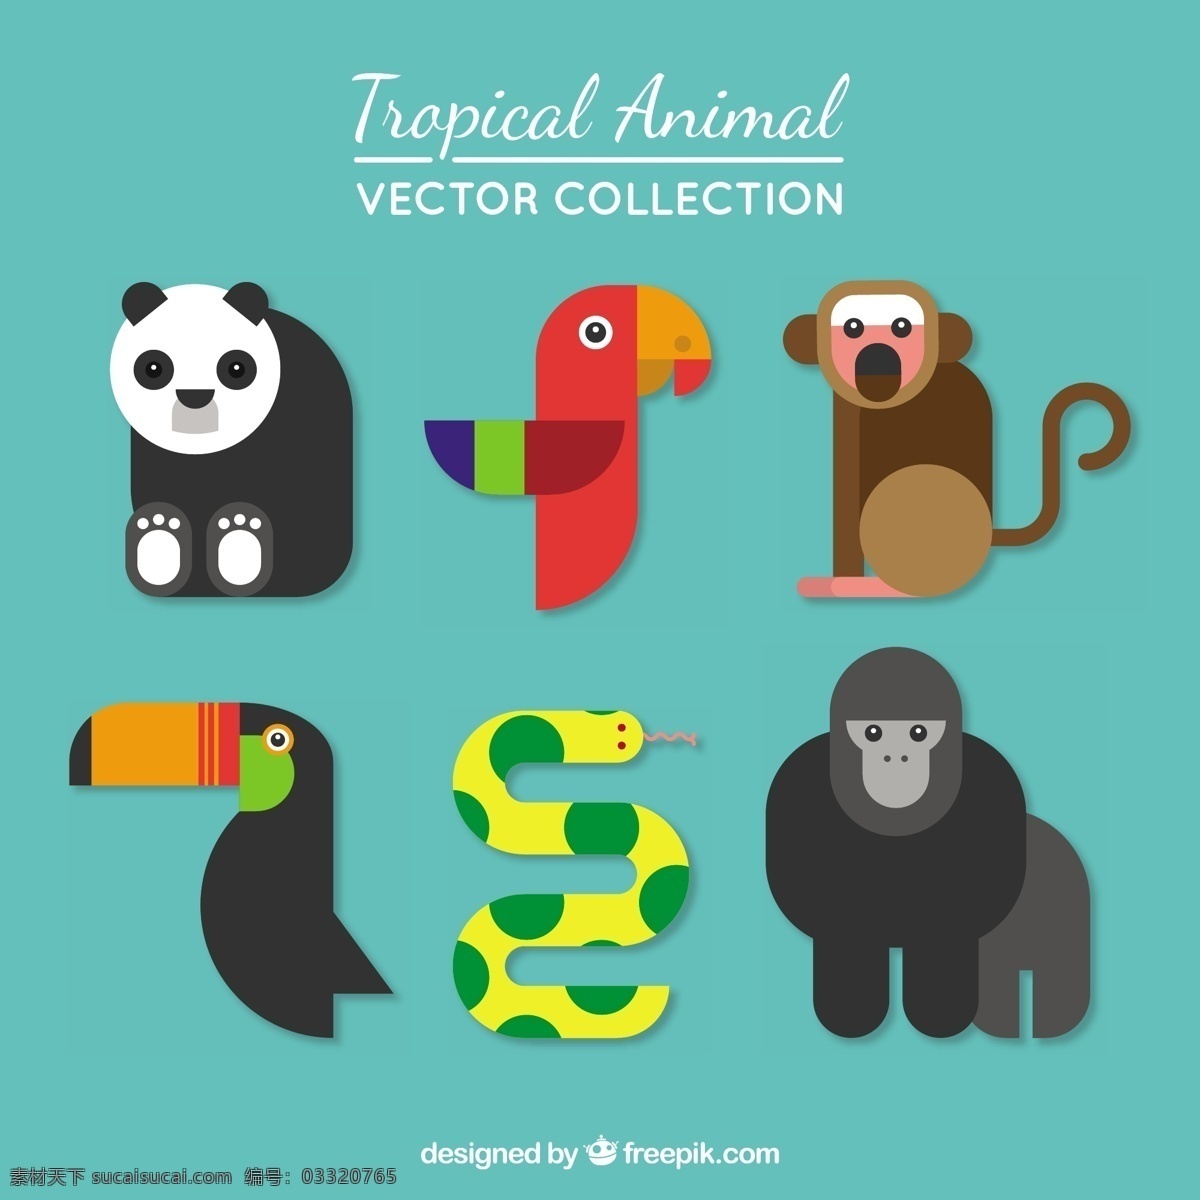 热带 动物 收藏 现代 风格 鸟 自然 猴子 可爱 鸟类 平面设计 蛇 熊猫 鹦鹉 大猩猩 可爱的动物 野生动物 青色 天蓝色